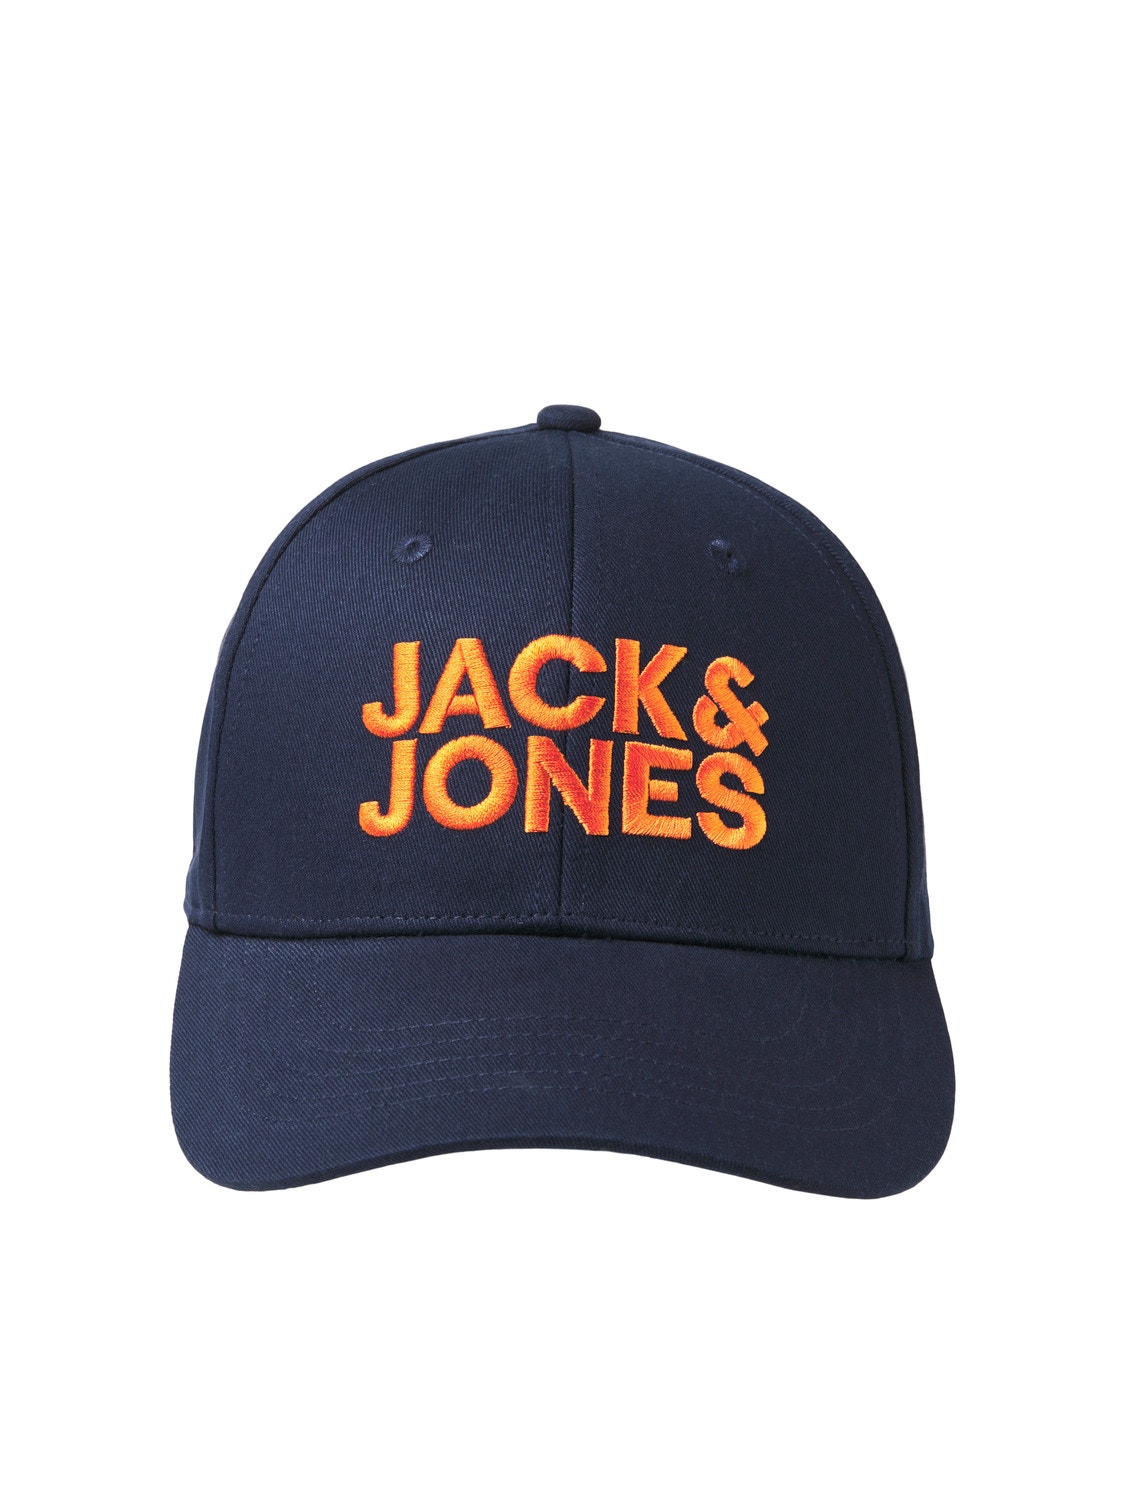 Jack & Jones Casquette baseball -Navy Blazer - 12254296